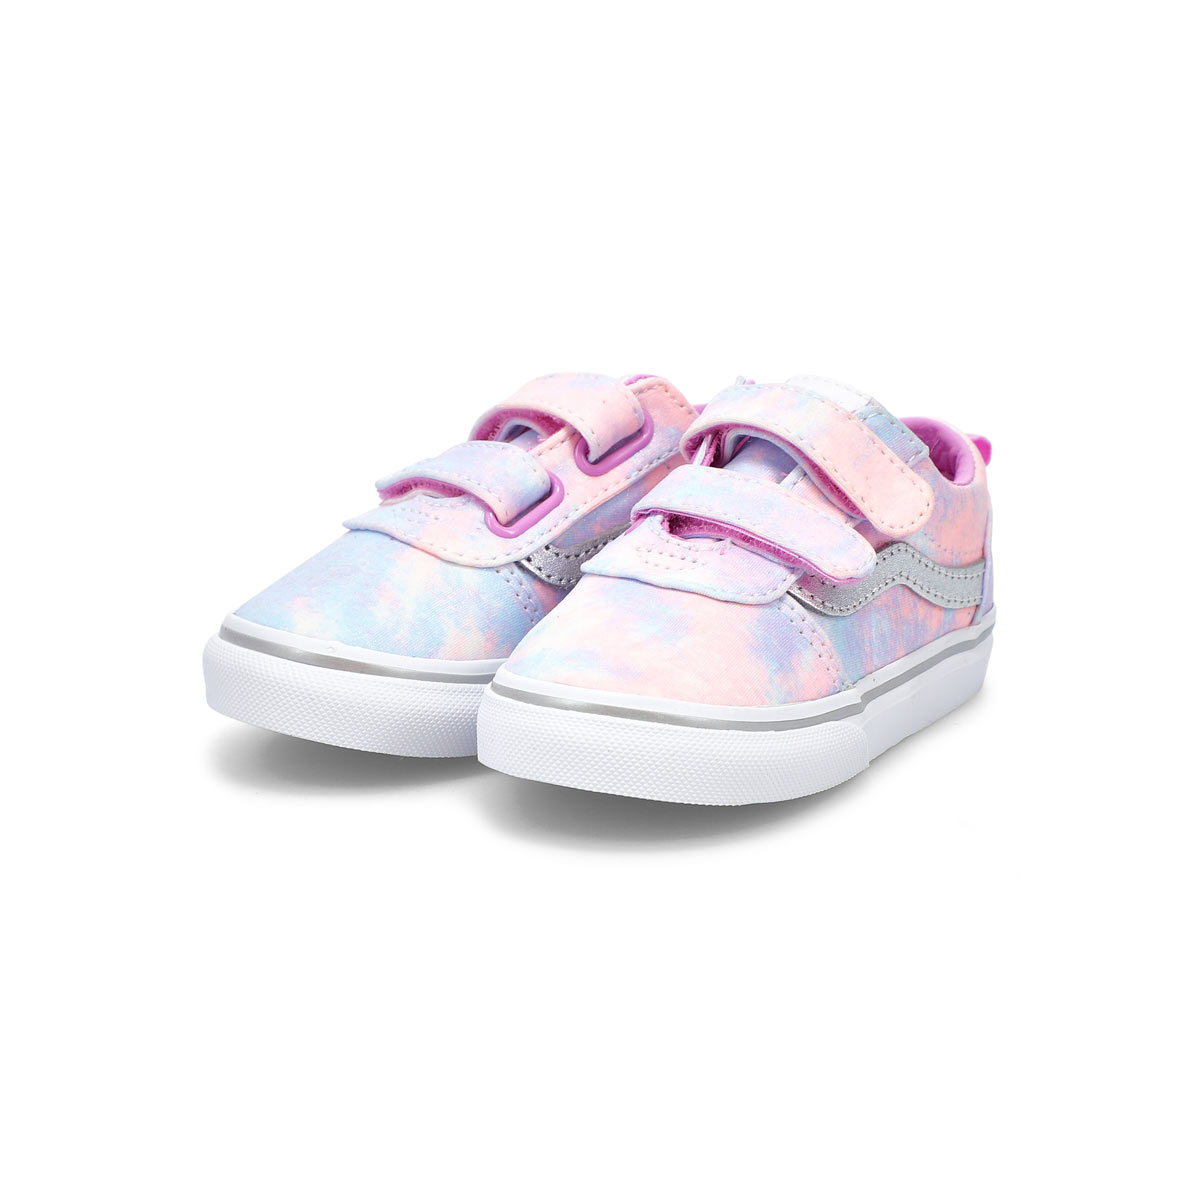 Infants' Ward V Sneaker - Tie Dye Multi/White